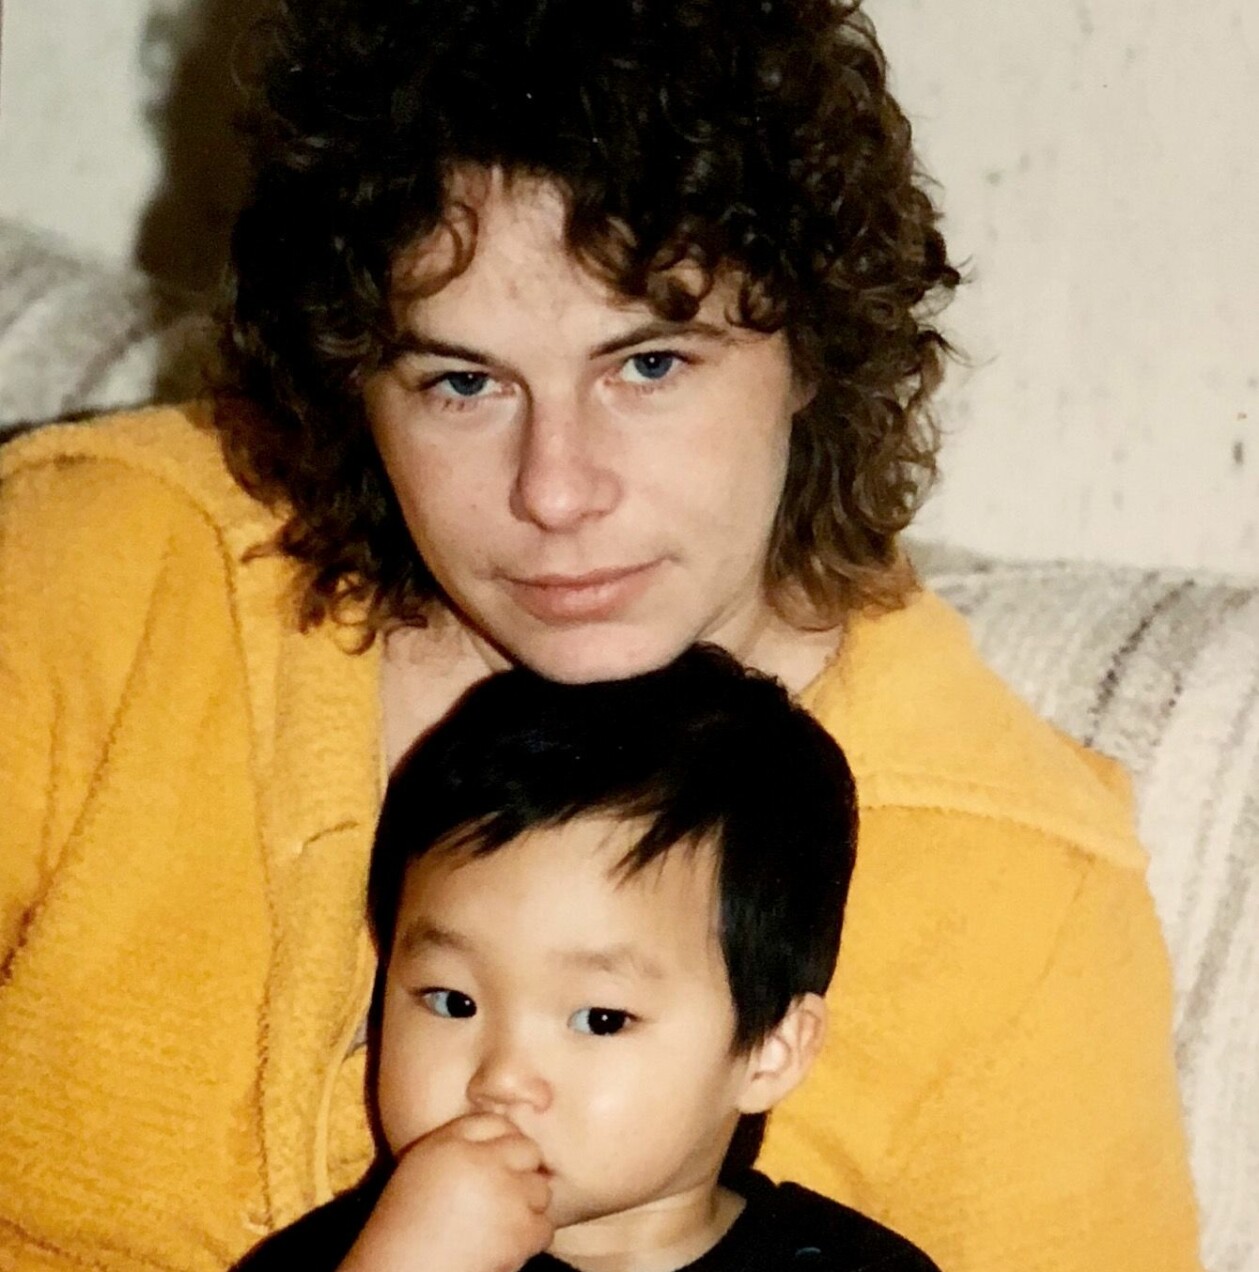 Journalisten och författaren Patrik Lundberg som barn tillsammans med sin mamma Birgitta Lundberg.